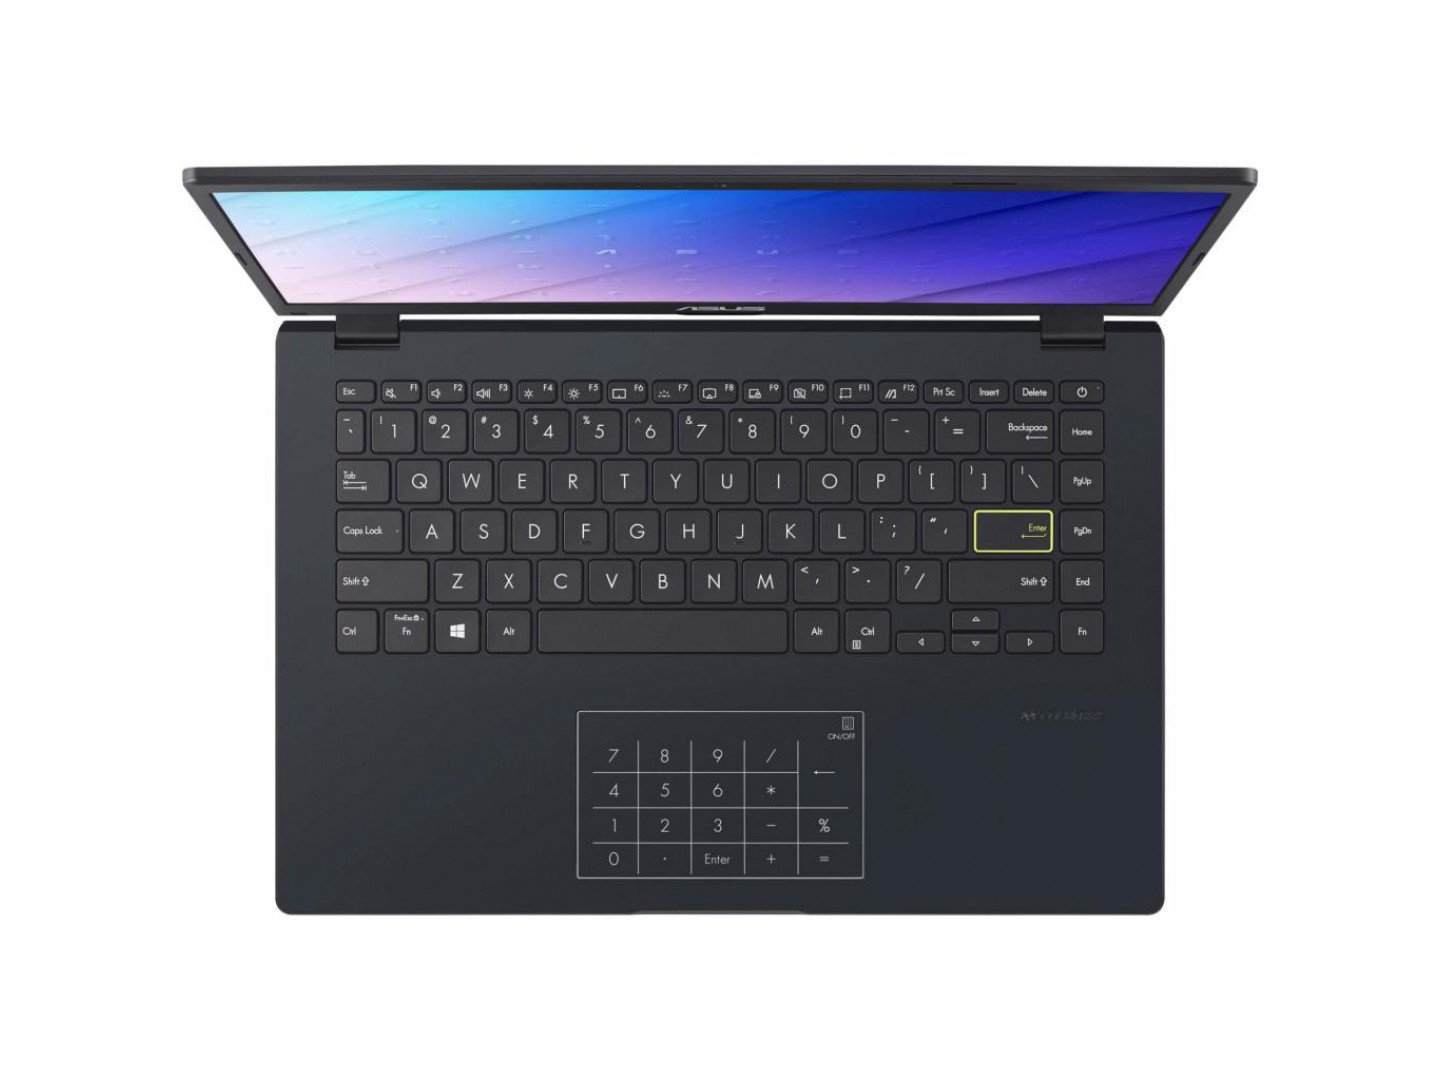 Купить Ноутбук ASUS E410MA Peacock Blue (E410MA-EB009) - ITMag